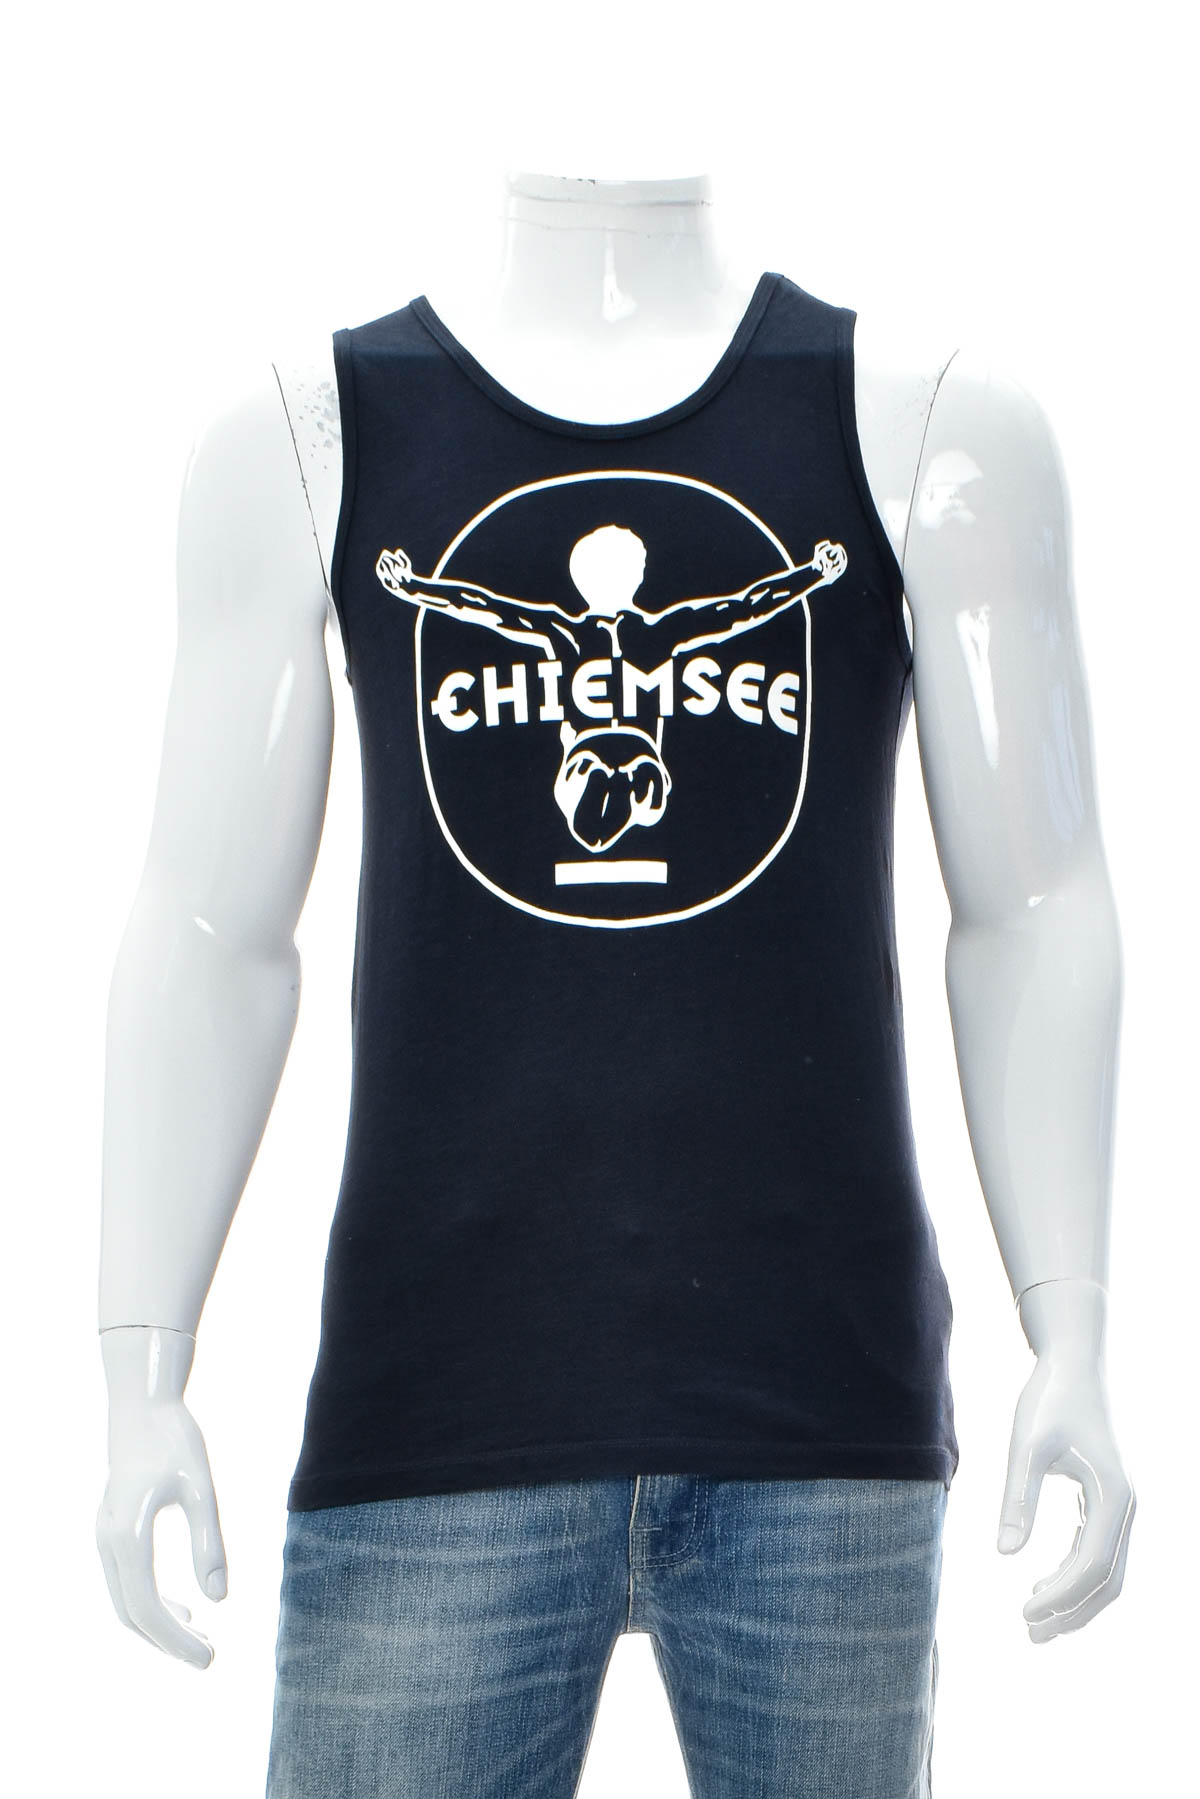 Μπλούζα για αγόρι - Chiemsee - 0